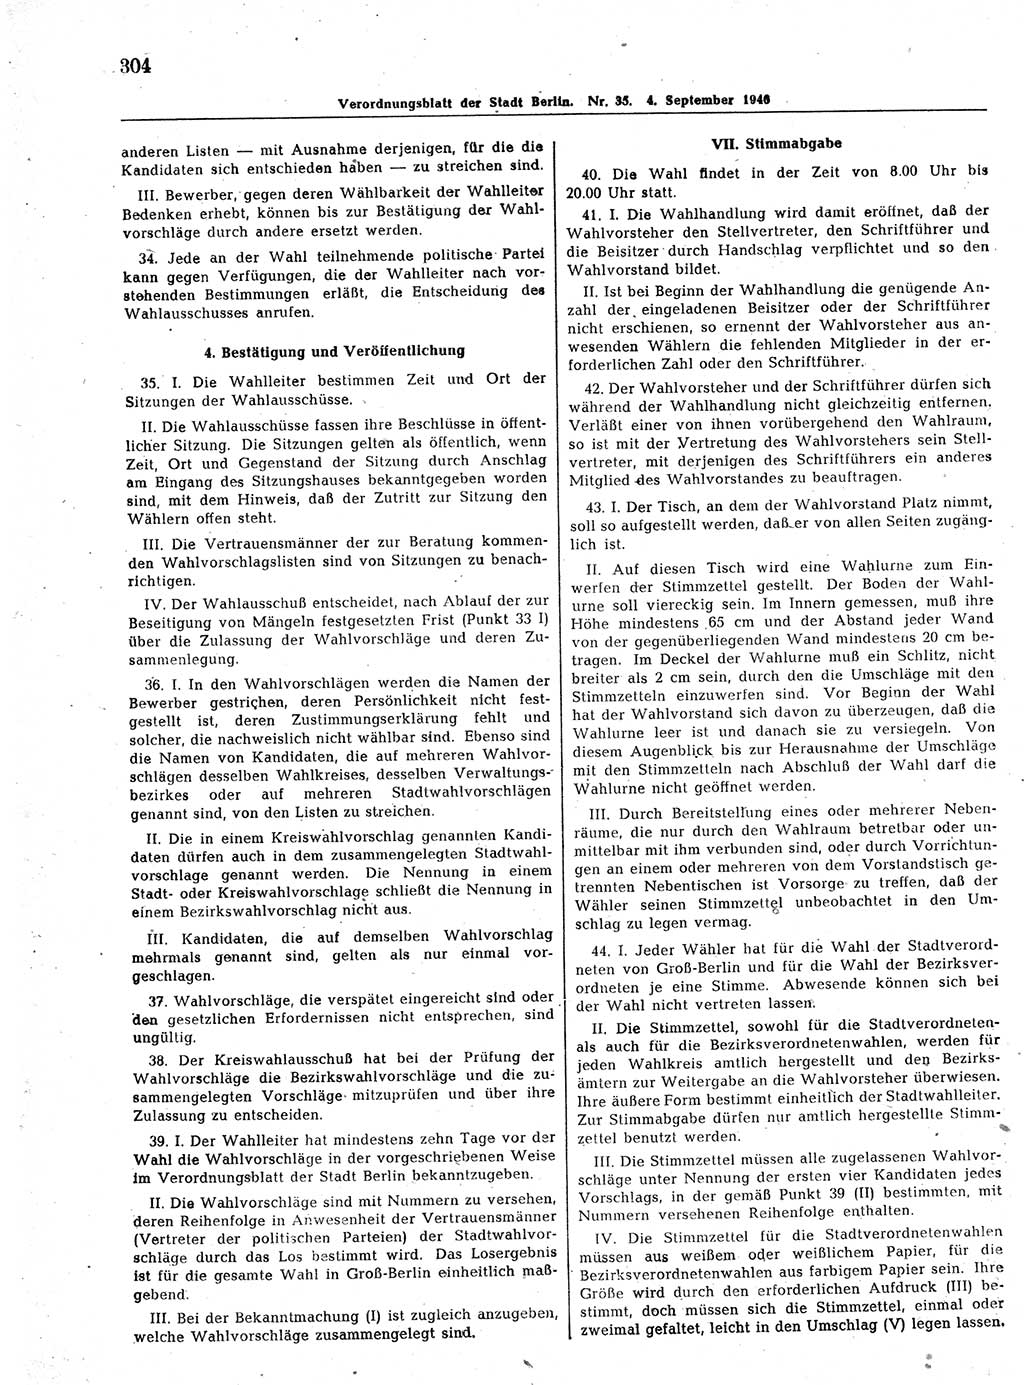 Verordnungsblatt (VOBl.) der Stadt Berlin, für Groß-Berlin 1946, Seite 304 (VOBl. Bln. 1946, S. 304)